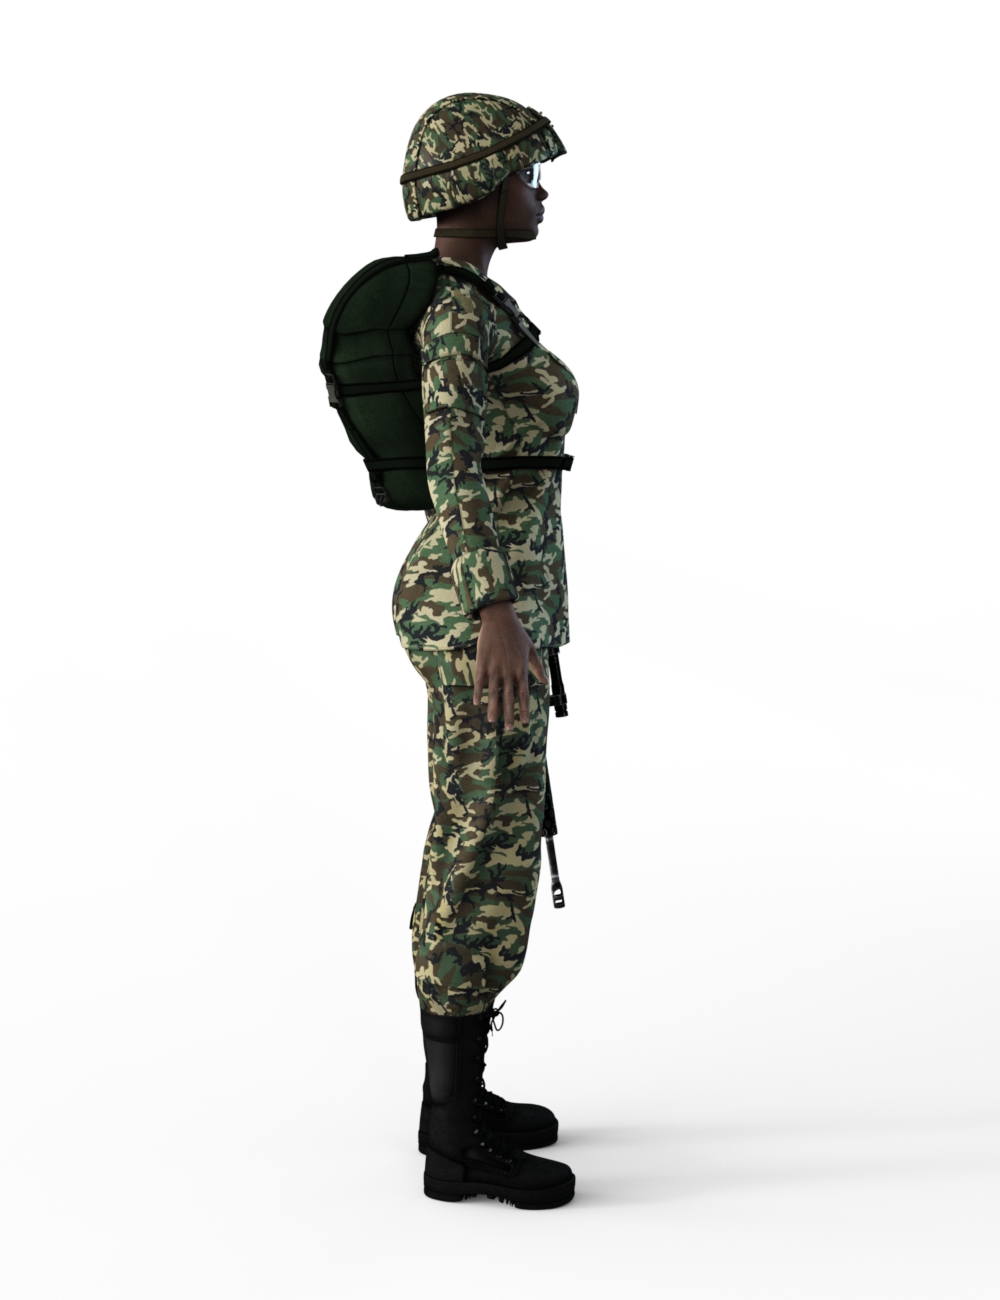 FBX- Mei Lin Army Uniform by: Paleo, 3D Models by Daz 3D